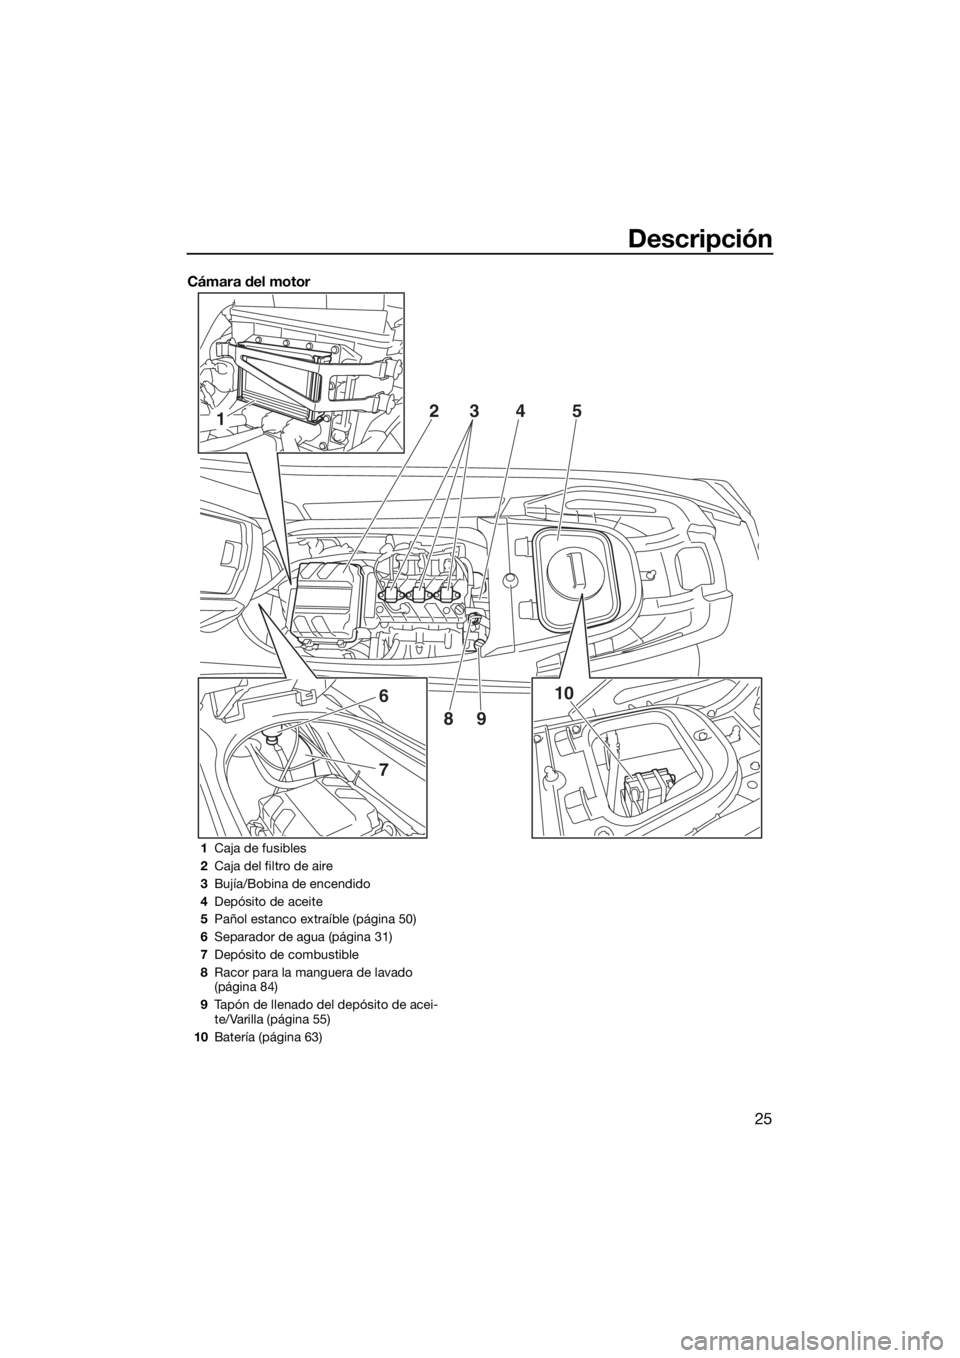 YAMAHA VX-C 2020  Manuale de Empleo (in Spanish) Descripción
25
Cámara del motor
1
6
7
10 2
345
89
1Caja de fusibles
2Caja del filtro de aire
3Bujía/Bobina de encendido
4Depósito de aceite
5Pañol estanco extraíble (página 50)
6Separador de ag